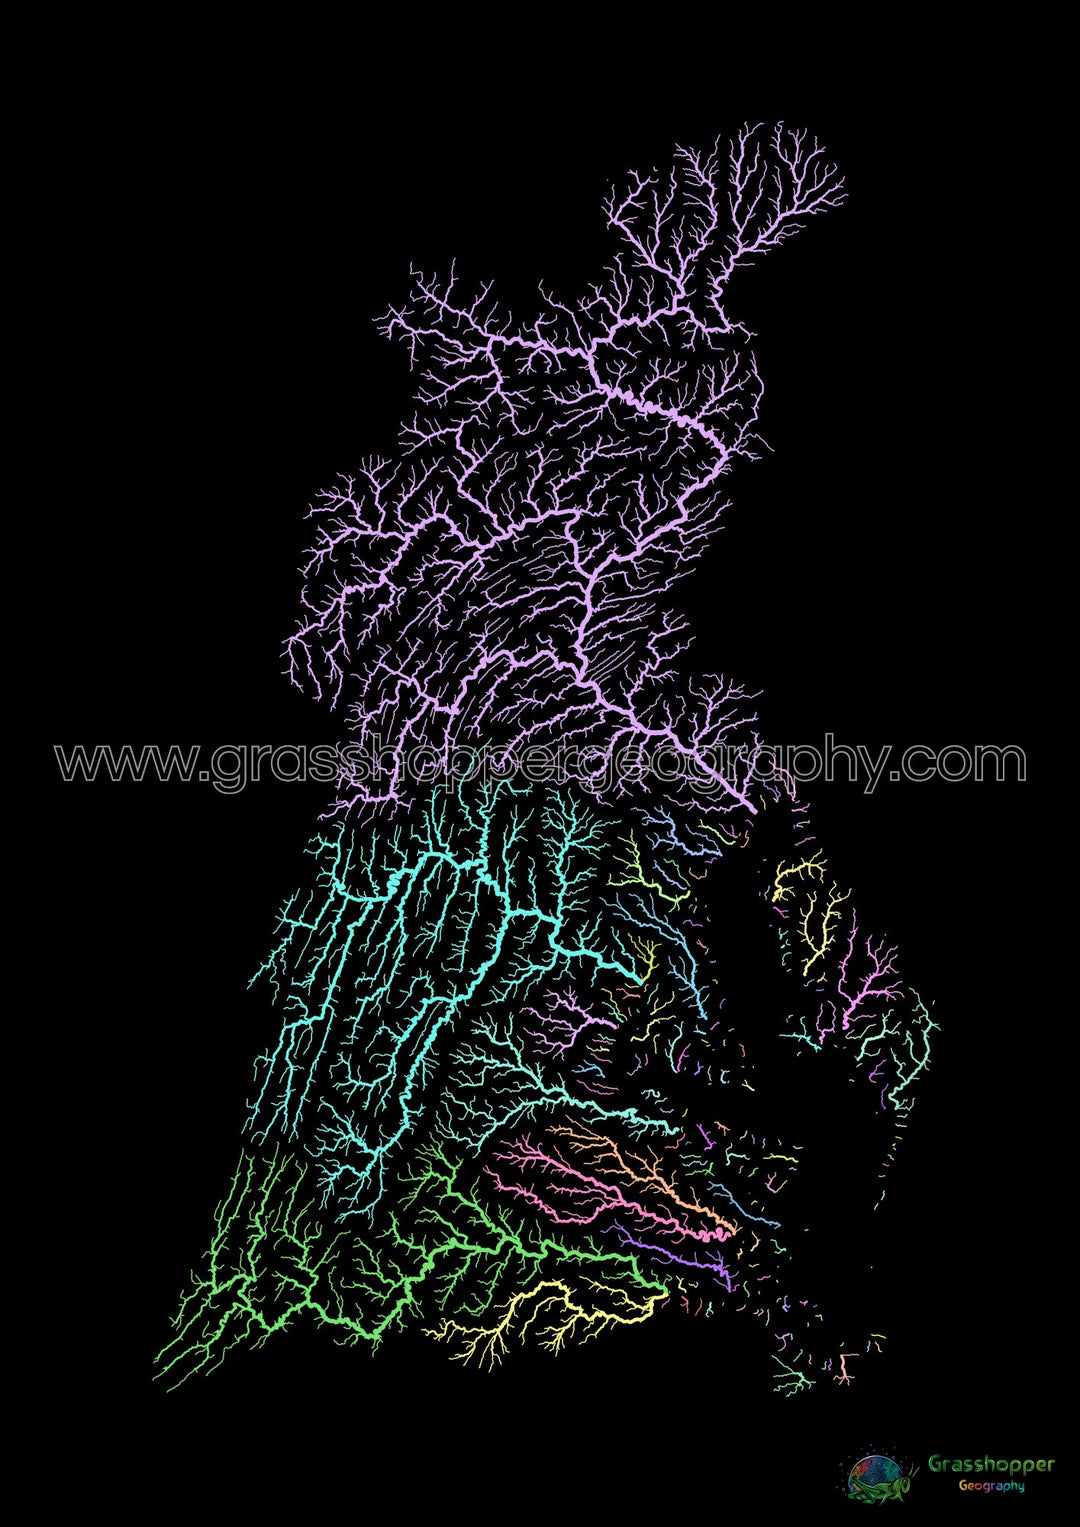 La Bahía de Chesapeake - Mapa de la cuenca del río, pastel sobre negro - Impresión de Bellas Artes